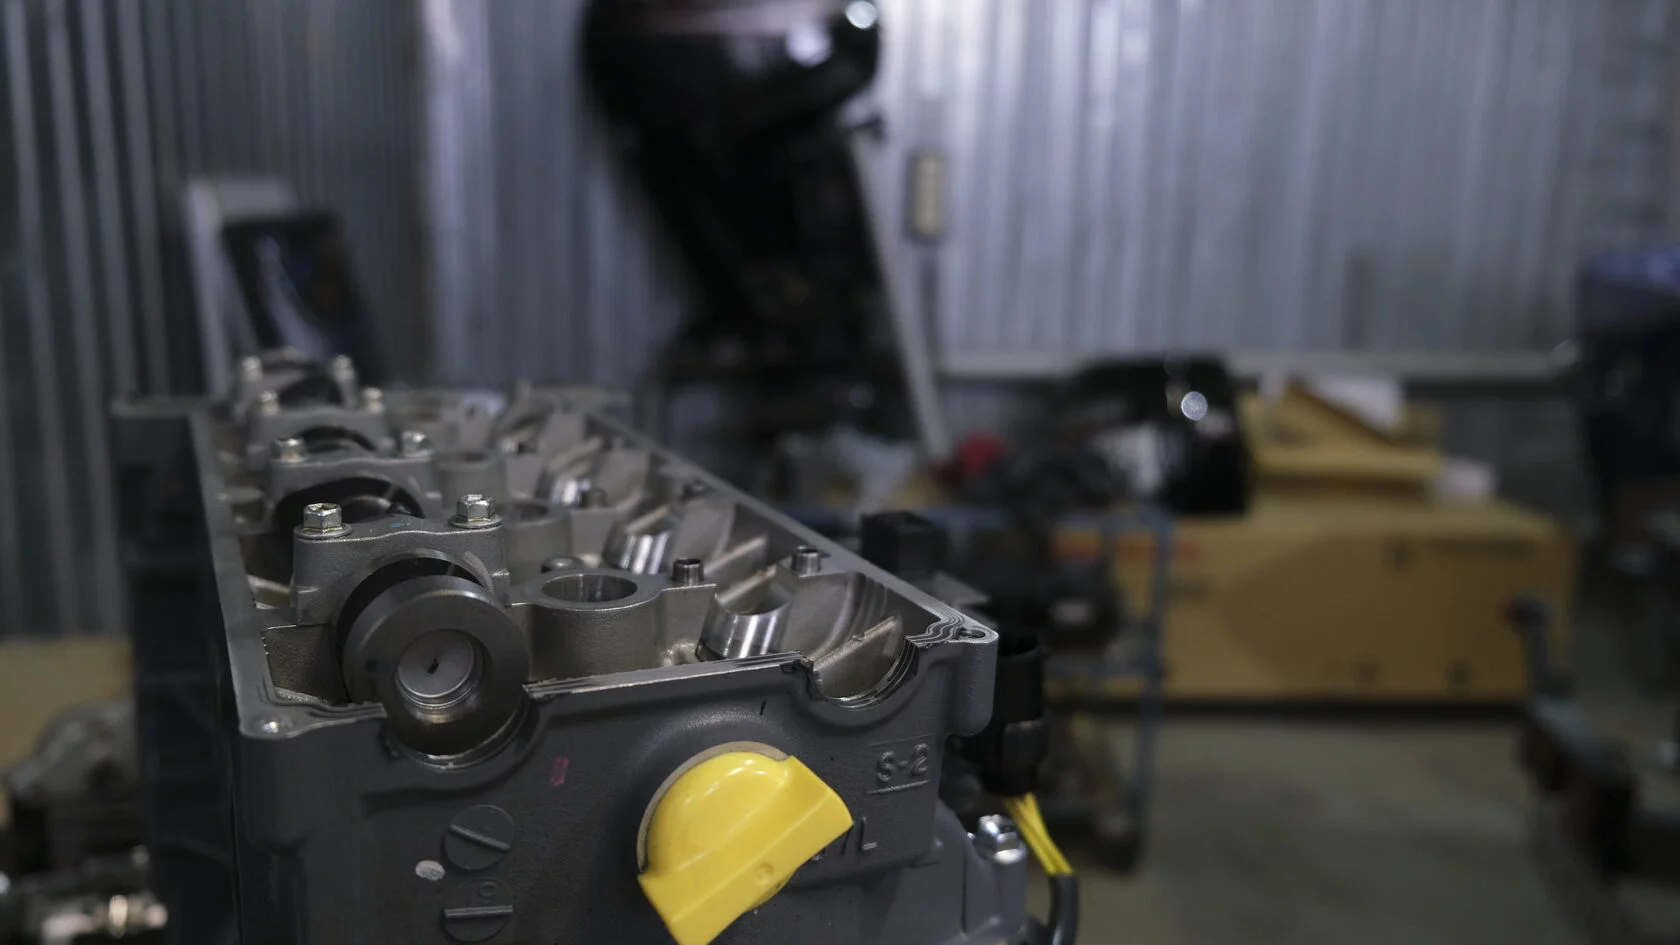 Ремонт лодочных моторов Yamaha мы доверяем только проверенным, сертифицированным специалистам!